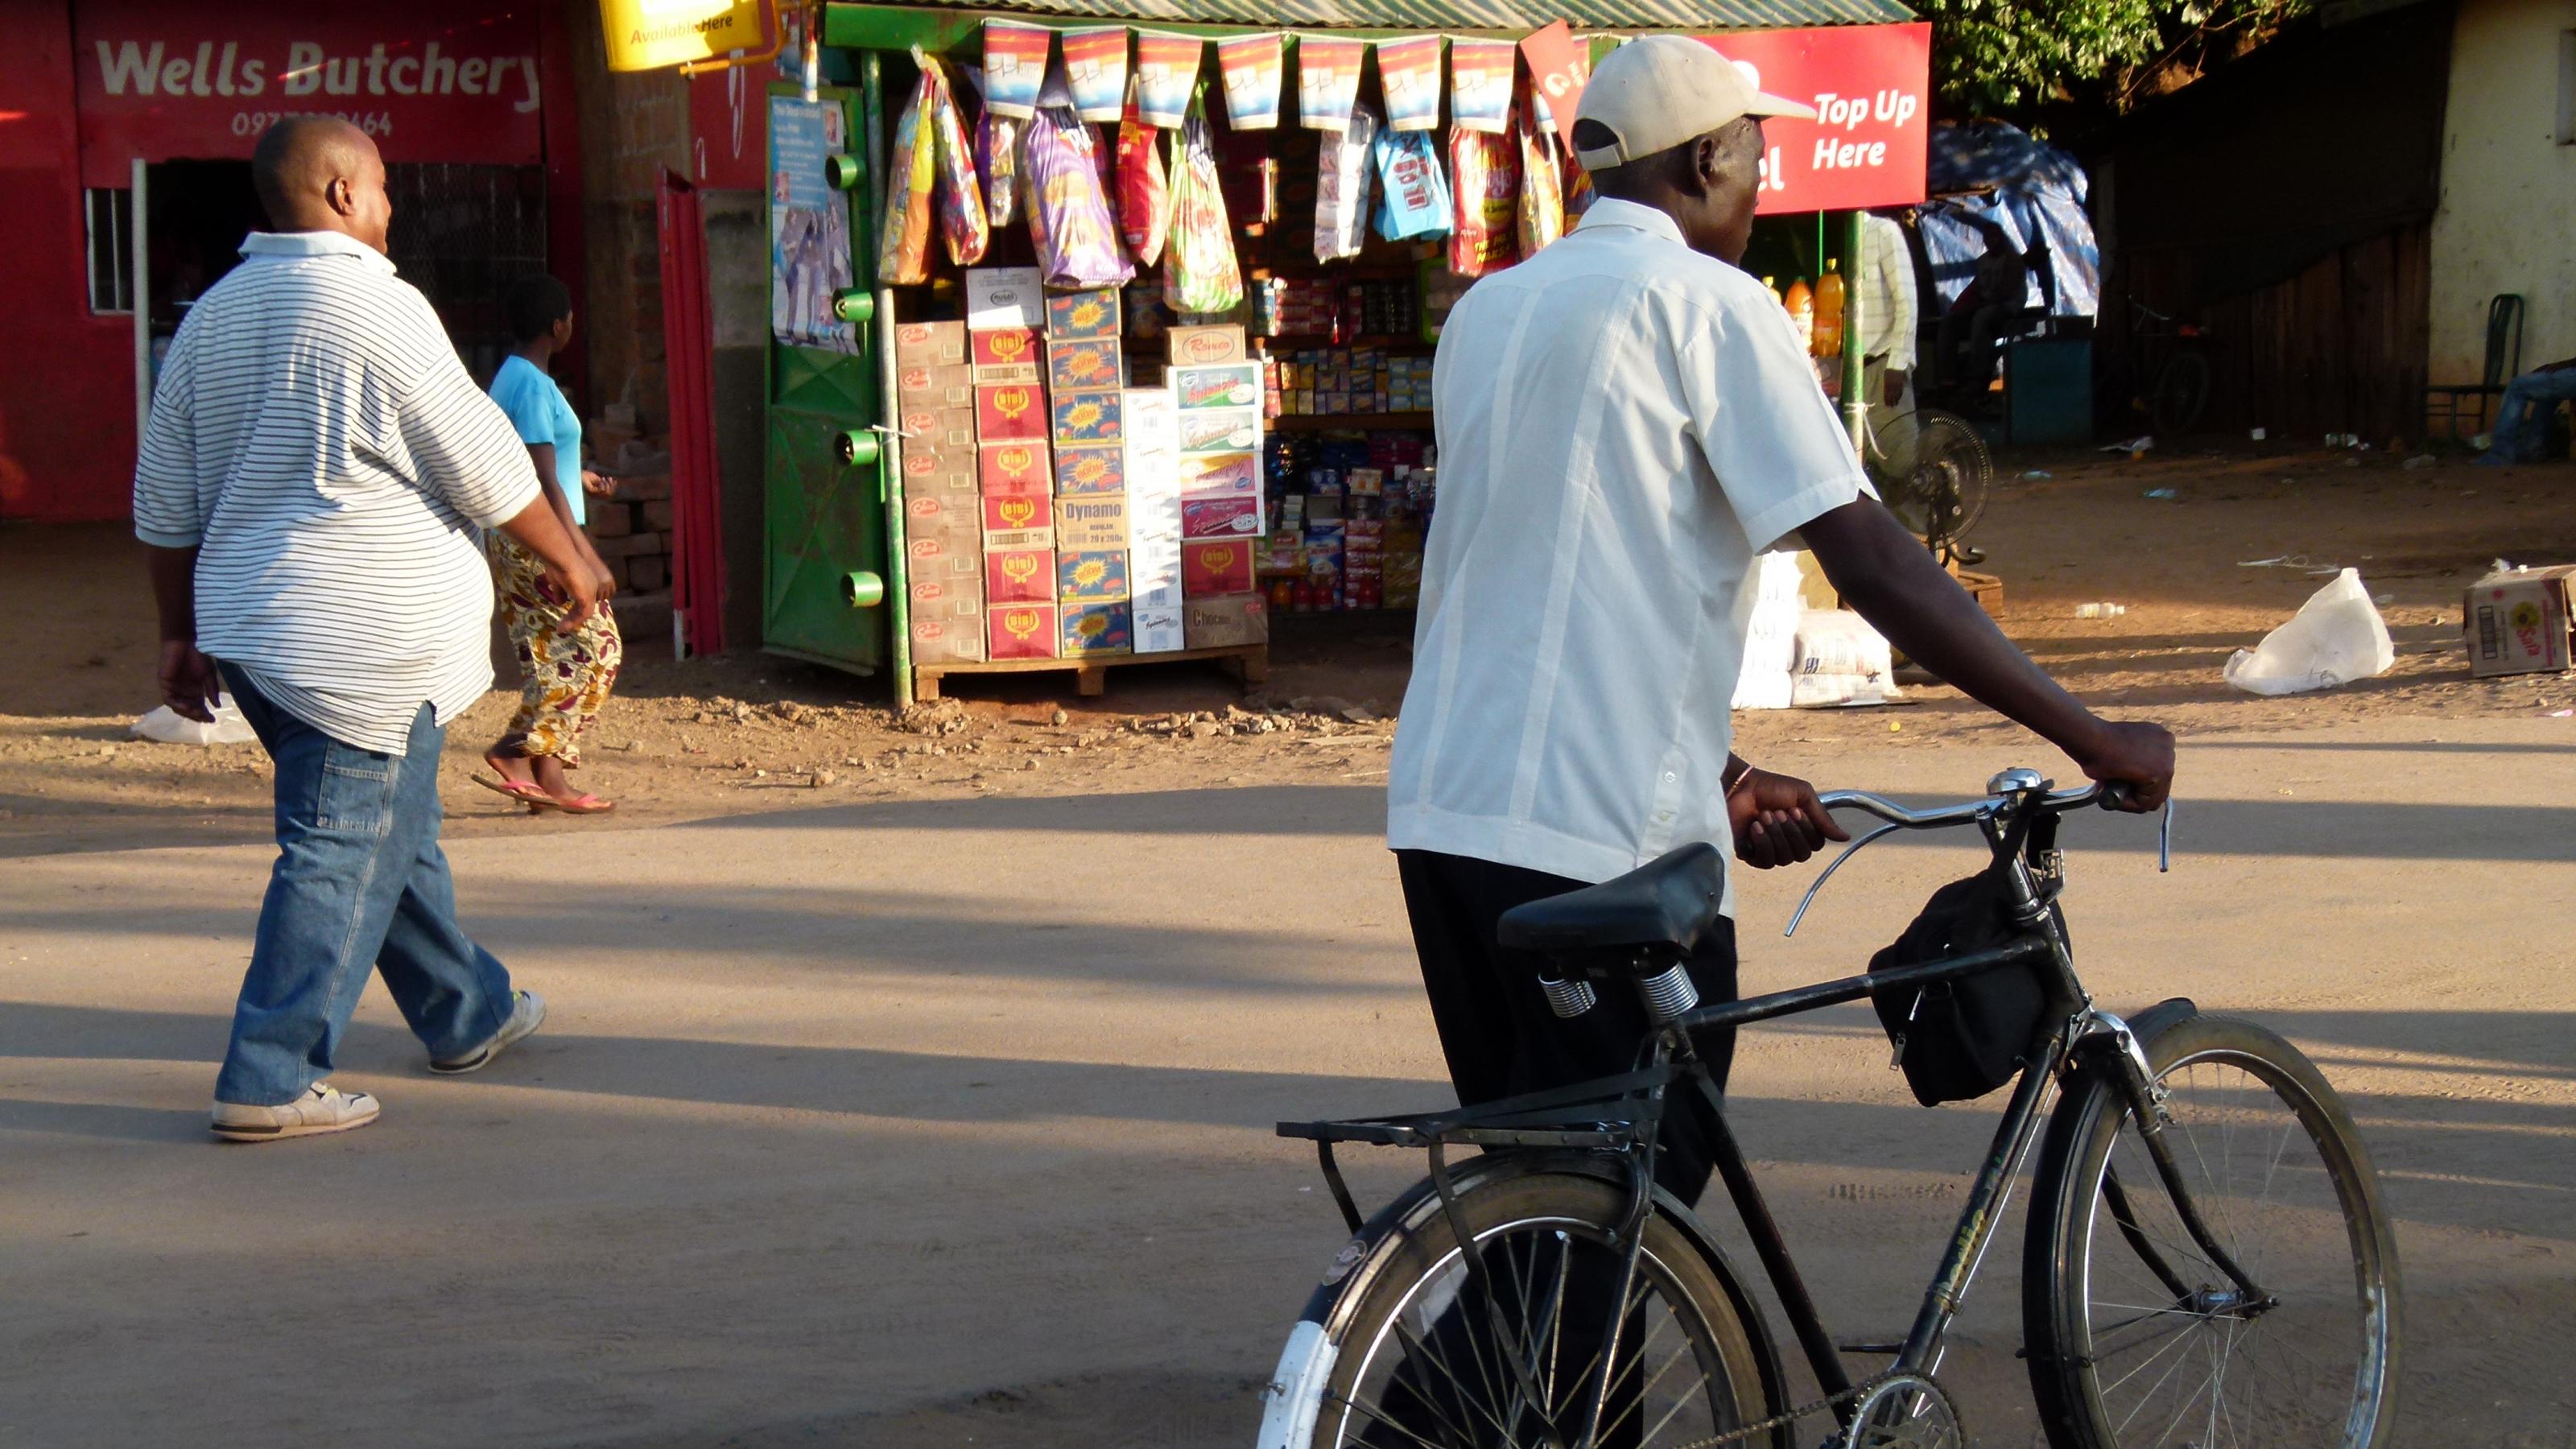 Straßenszene in Sambia: Zwei Fussgänger gehen an einem Markstand vorbei, einer schiebt sein Fahrrad